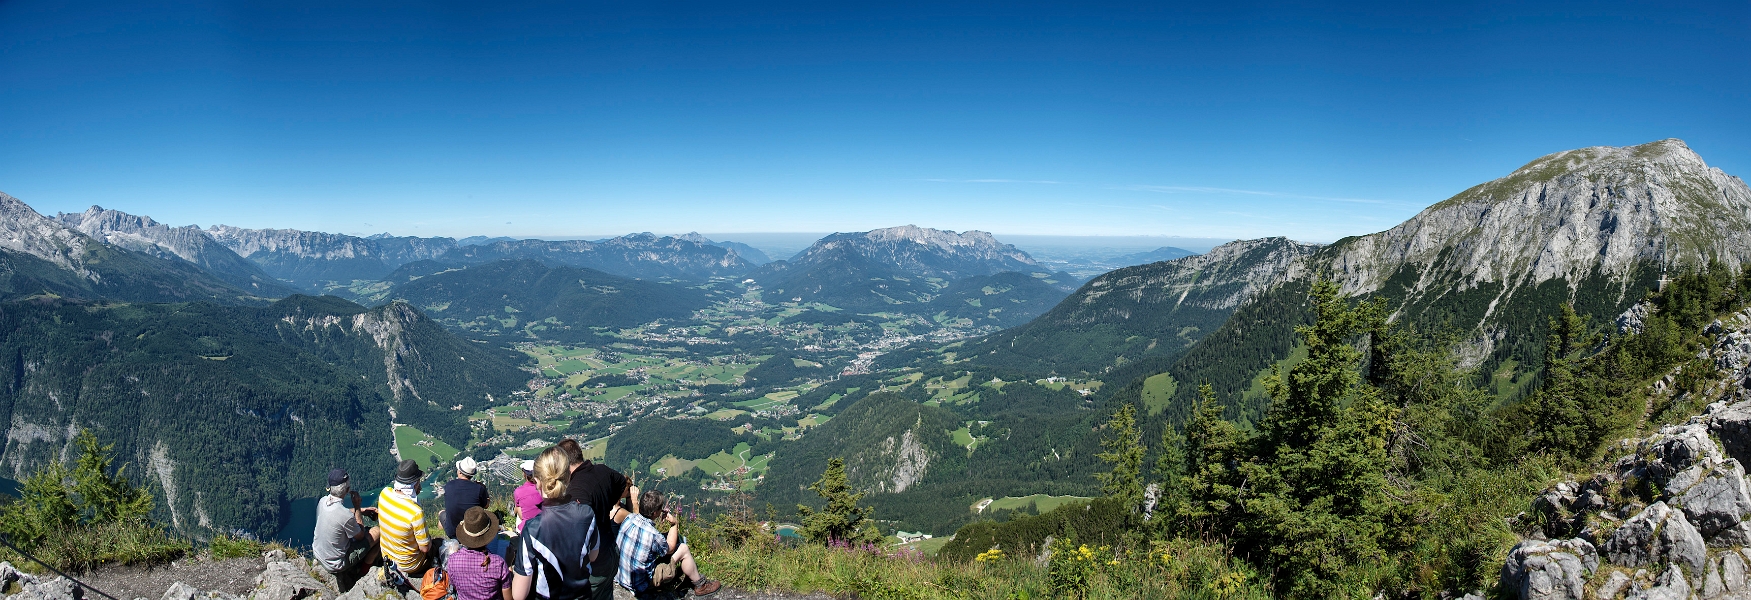 2572548608-12592744 Panorama.jpg - Blick vom Jenner auf Schönau und Richtung Berchtesgaden